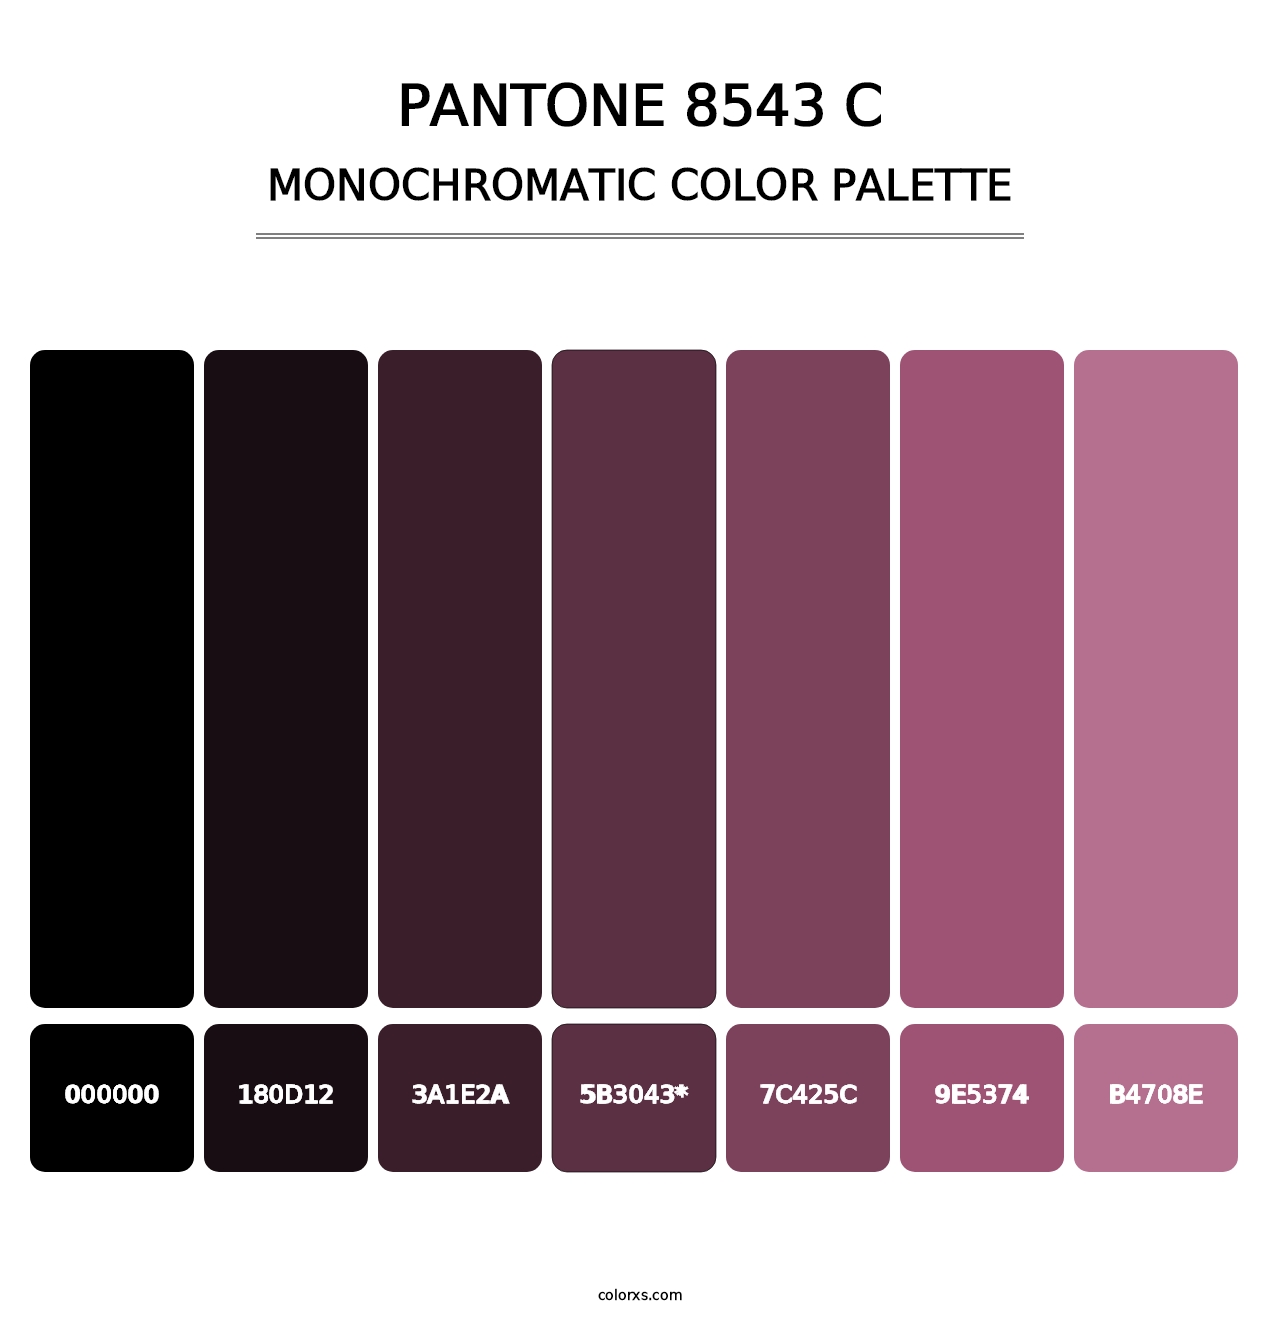 PANTONE 8543 C - Monochromatic Color Palette